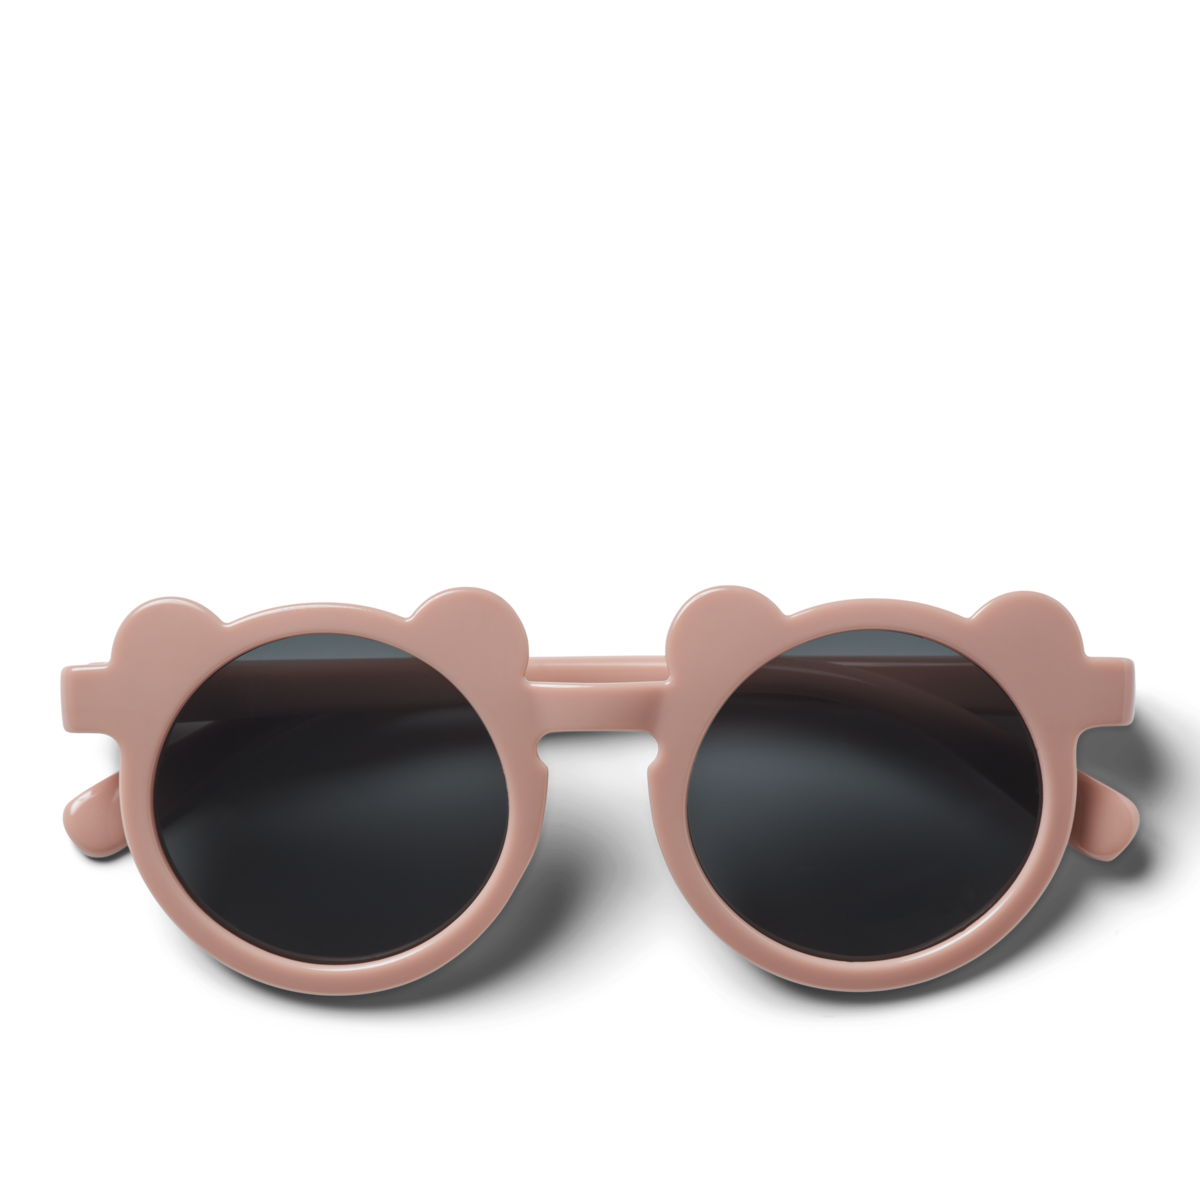 Darla Mr. Bear Sonnenbrille für Kinder  - Für 4-10 Jährige